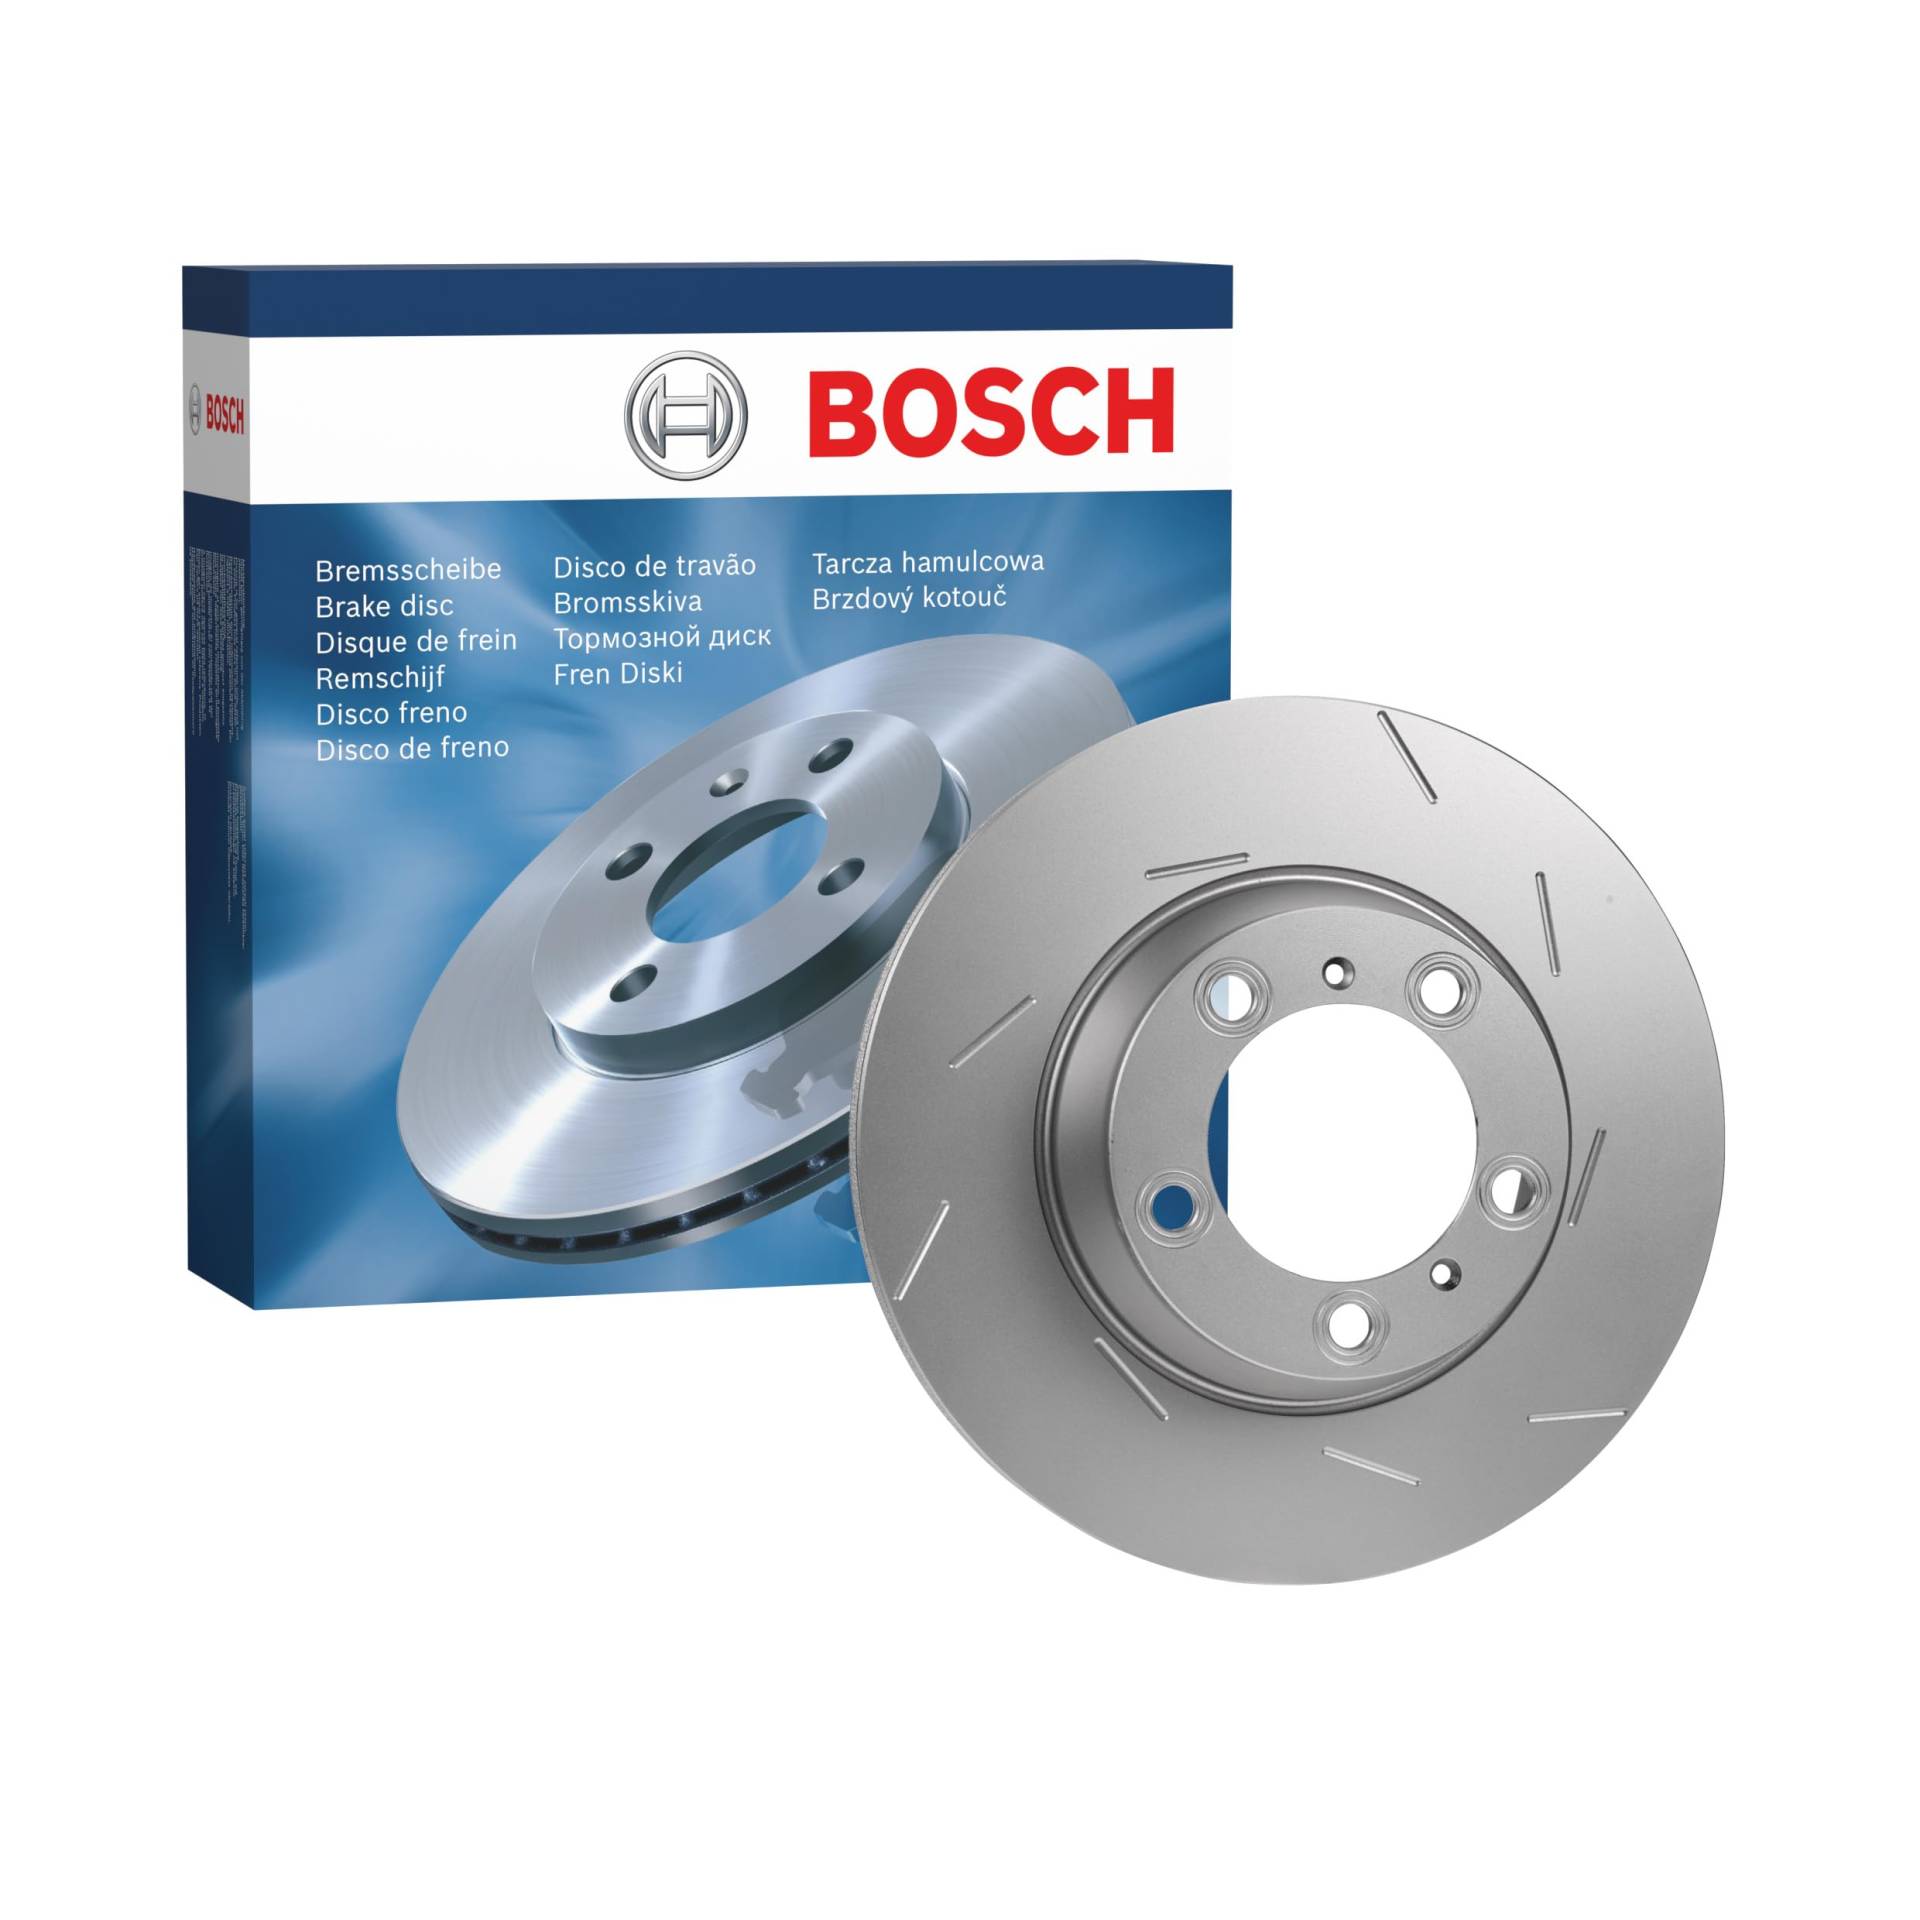 Bosch BD1565 Bremsscheiben - Hinterachse - ECE-R90 Zertifizierung - eine Bremsscheibe von Bosch Automotive